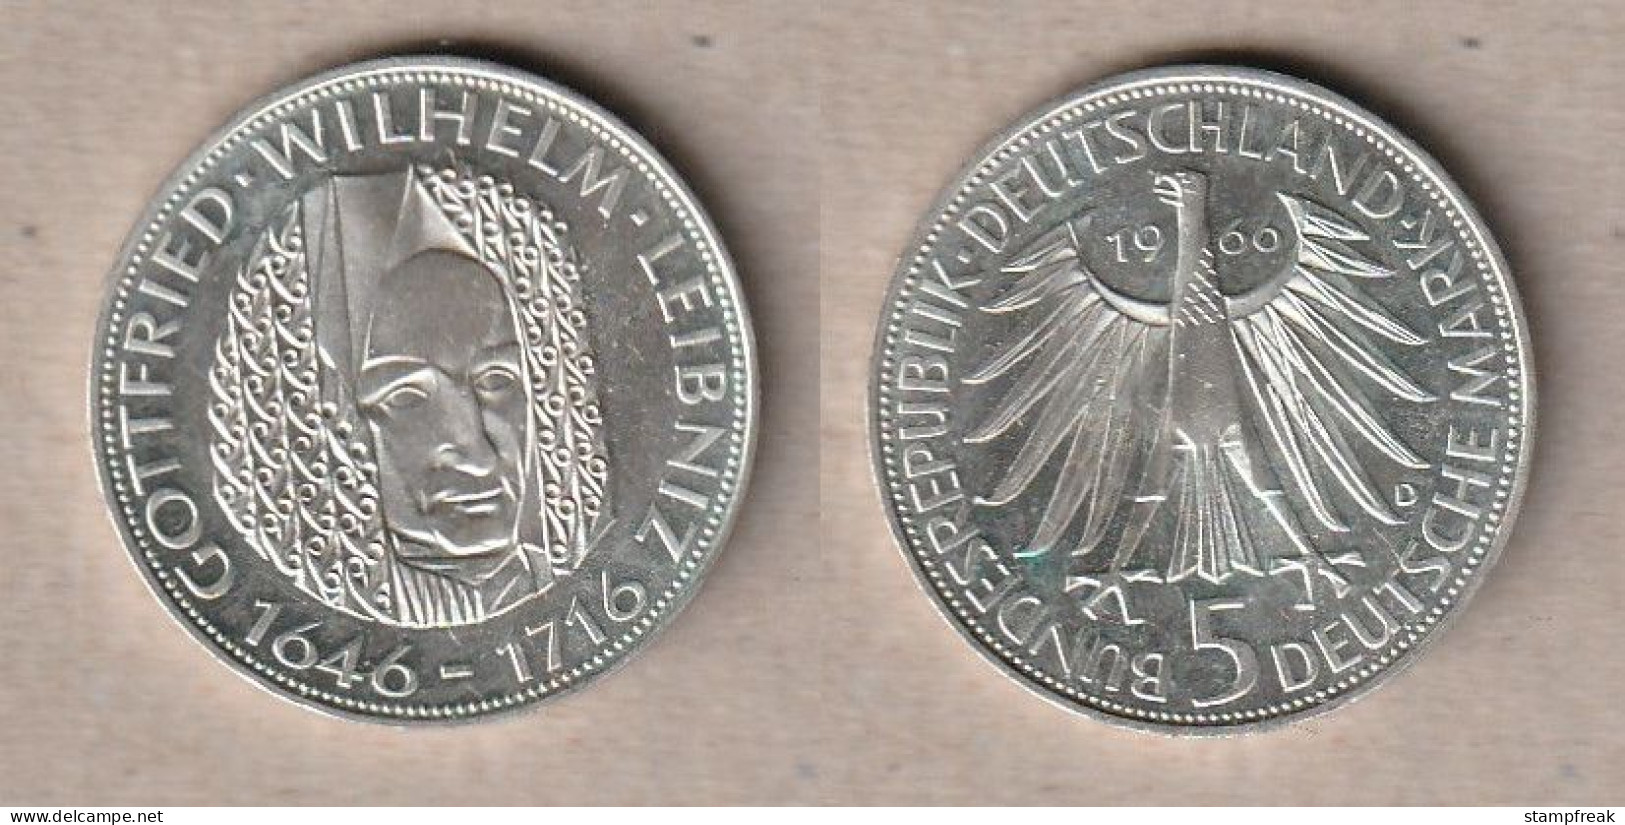 01549) Deutschland, 5 Mark 1966D Leibniz - 5 Marchi